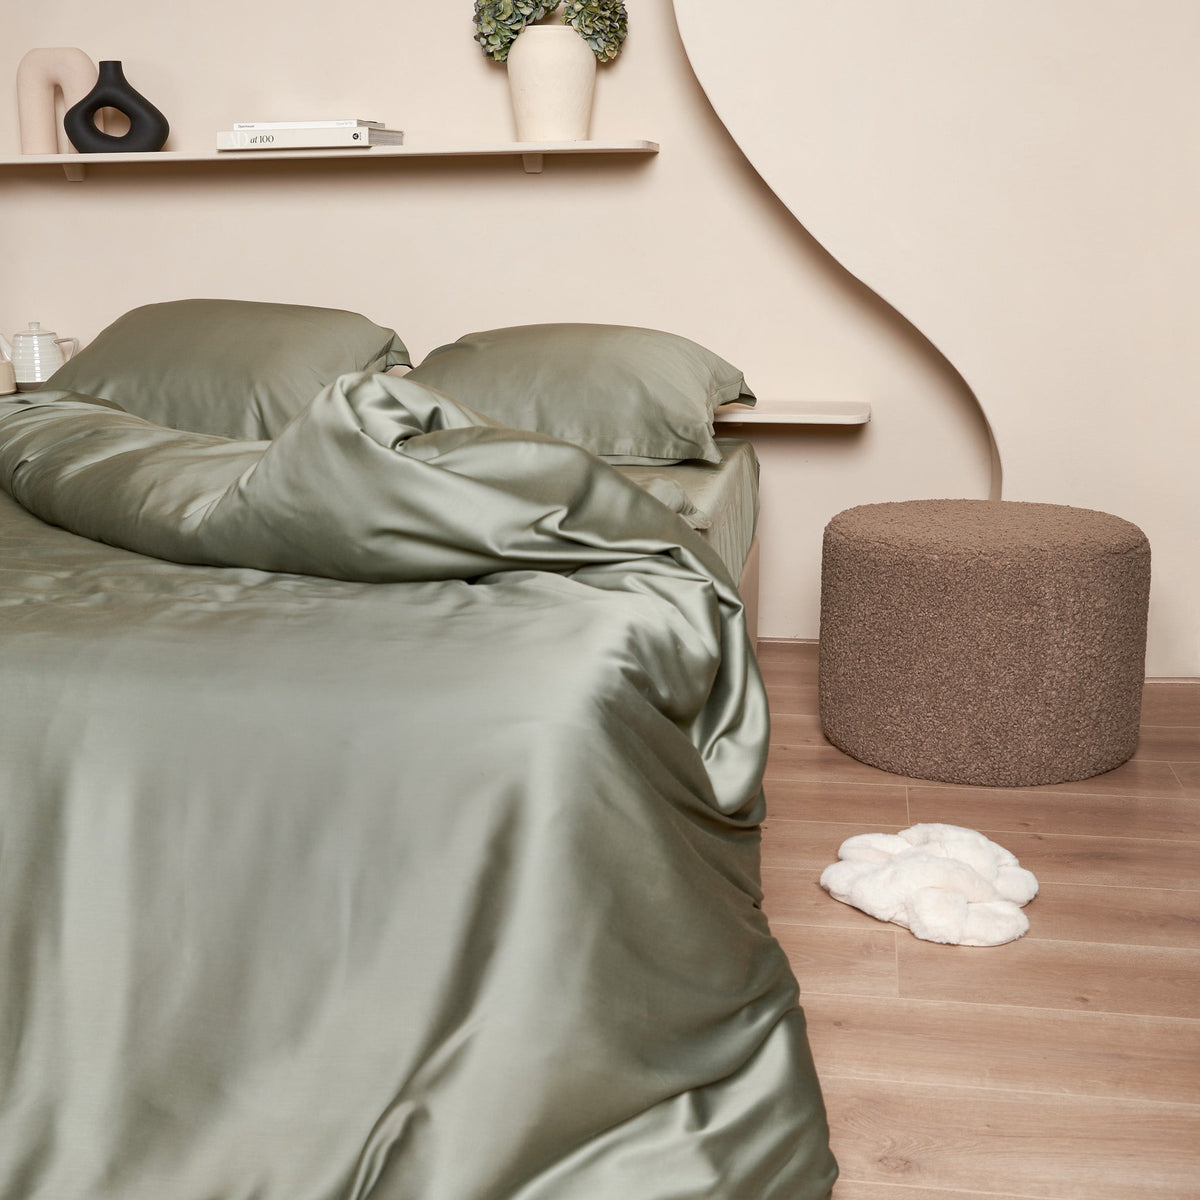 Opgemaakt bed van Bamboe beddengoed in de kleur olijfgroen. Hoekje van het hoeslaken zichtbaar door opengeslagen bed.